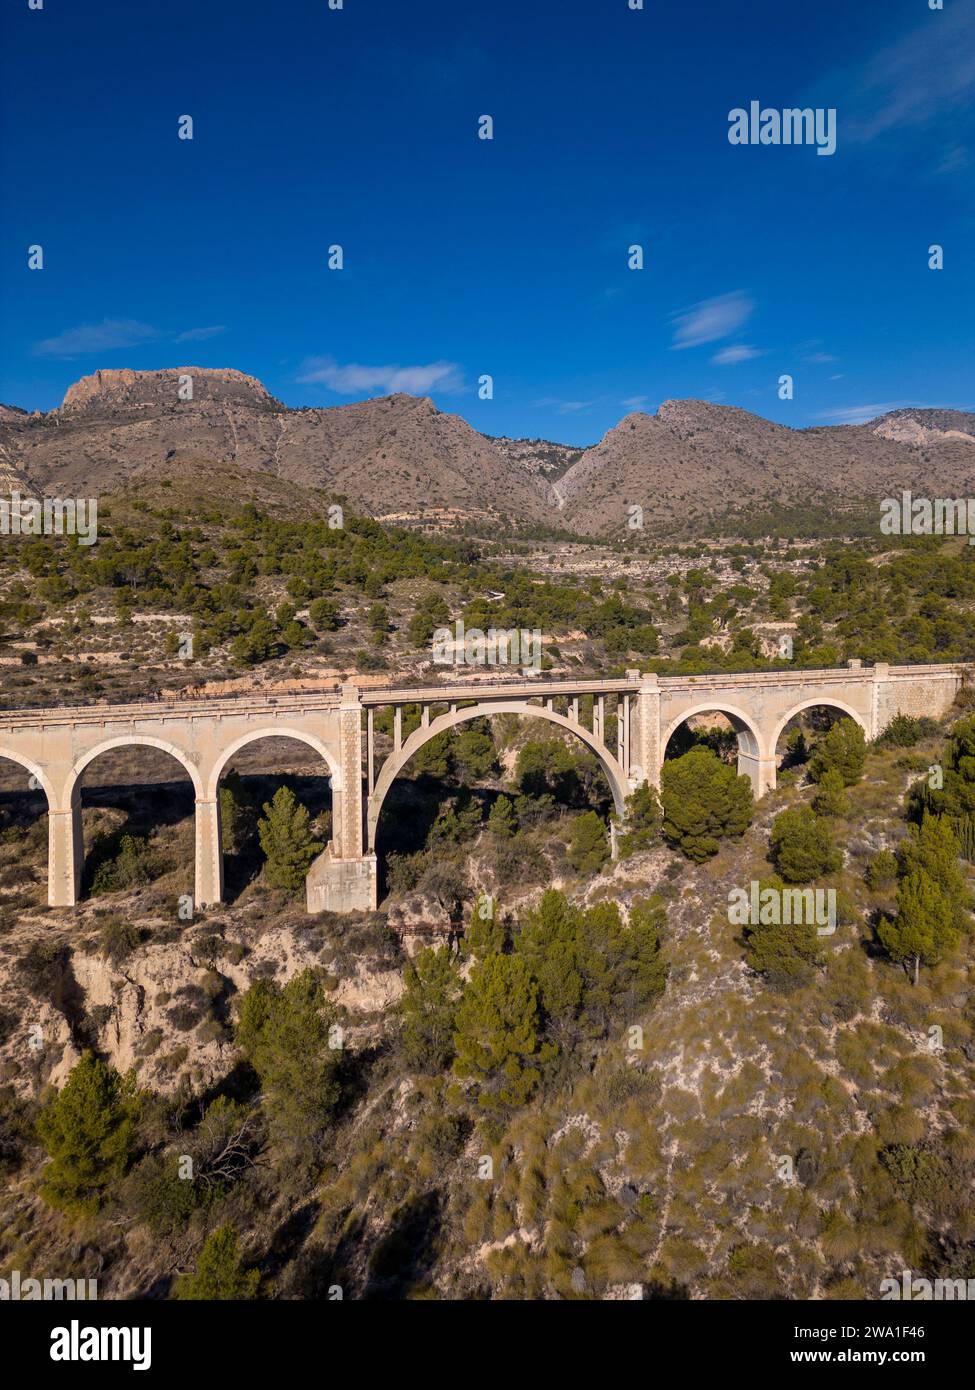 Vecchio ponte sulla Maigmó Greenway, un affascinante percorso di 22 chilometri che segue le orme del vecchio percorso ferroviario, Alicante, Spagna Foto Stock